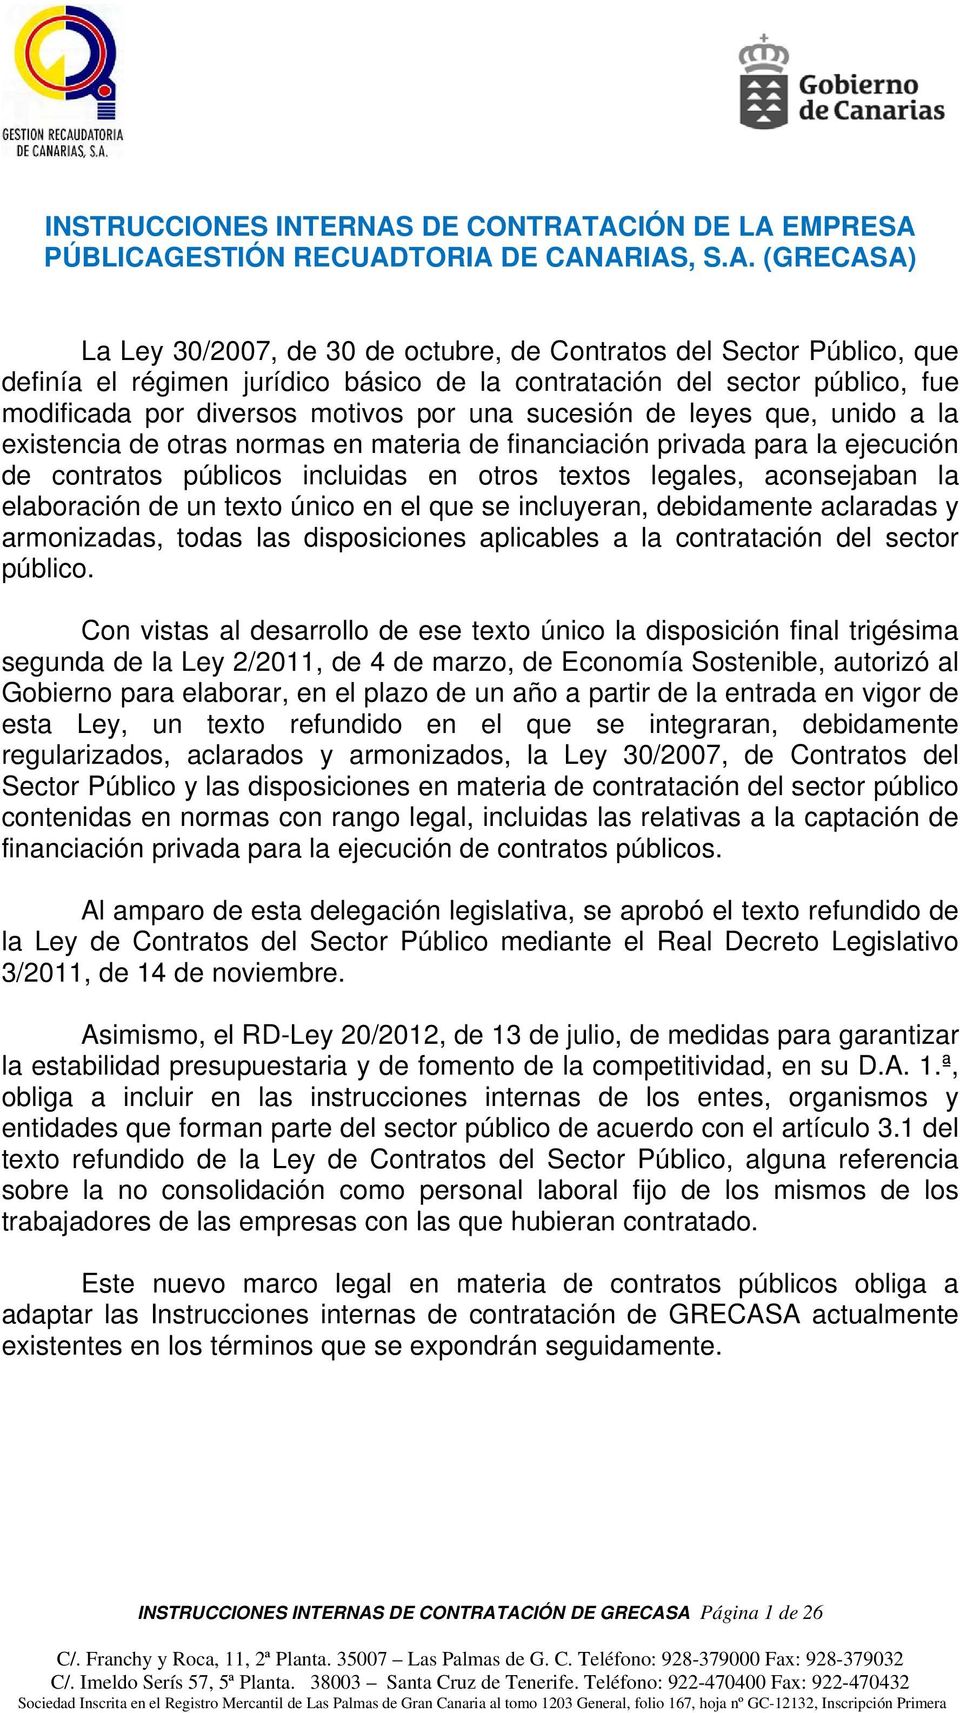 ACIÓN DE LA EMPRESA PÚBLICAGESTIÓN RECUADTORIA DE CANARIAS, S.A. (GRECASA) La Ley 30/2007, de 30 de octubre, de Contratos del Sector Público, que definía el régimen jurídico básico de la contratación